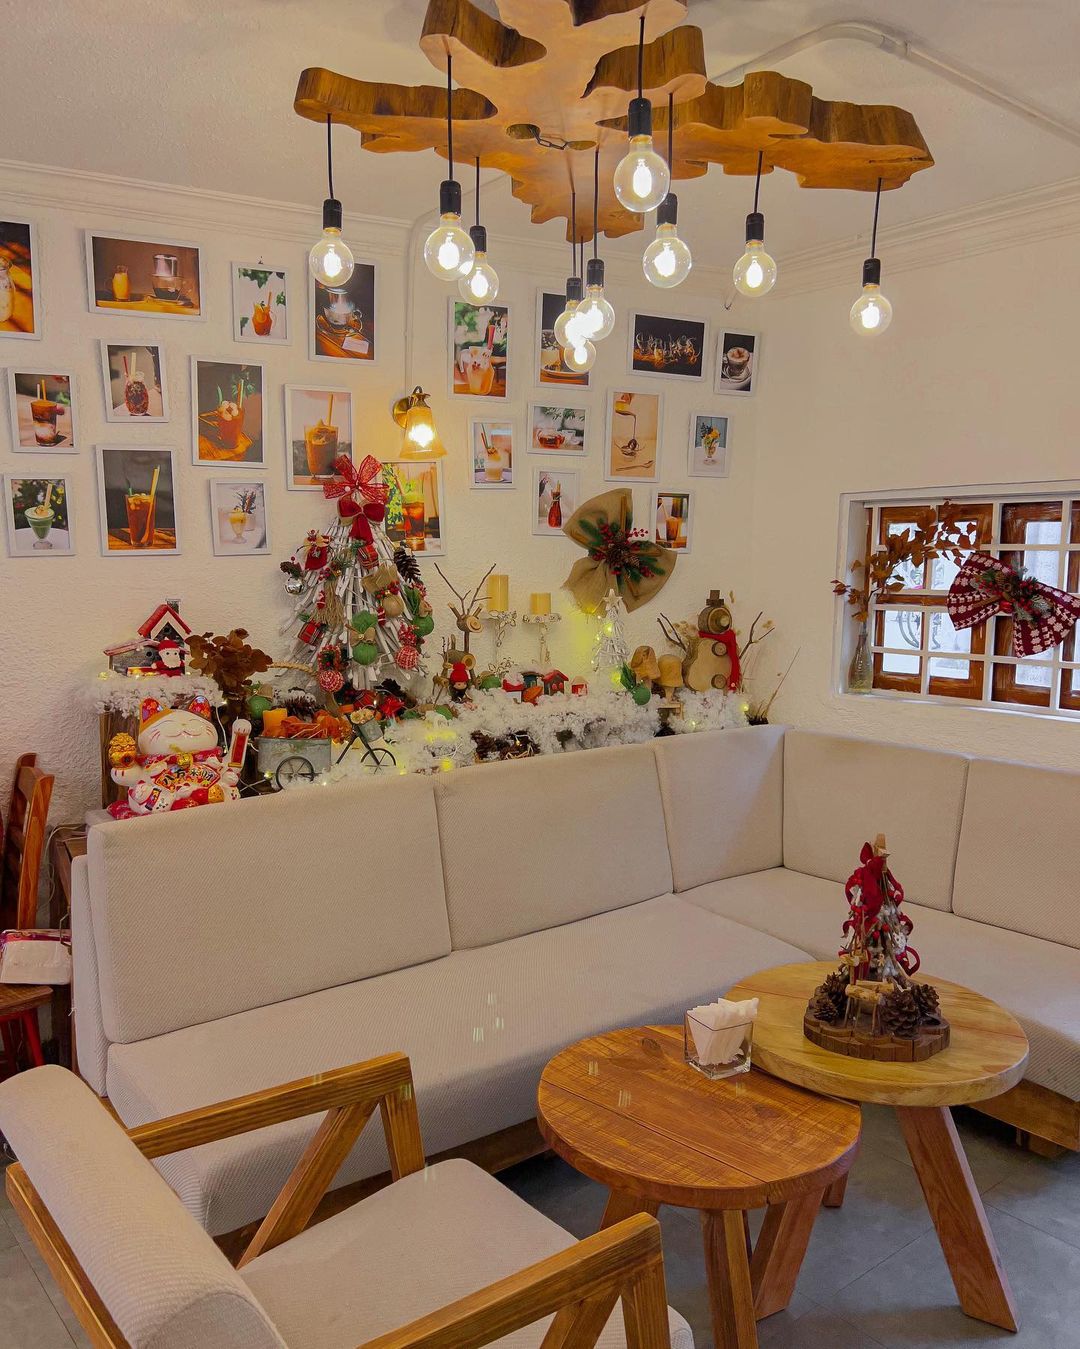 Hưởng ứng không khí Giáng sinh sớm tại những quán cà phê nằm trong ngôi biệt thự phong cách Châu Âu - ảnh 15